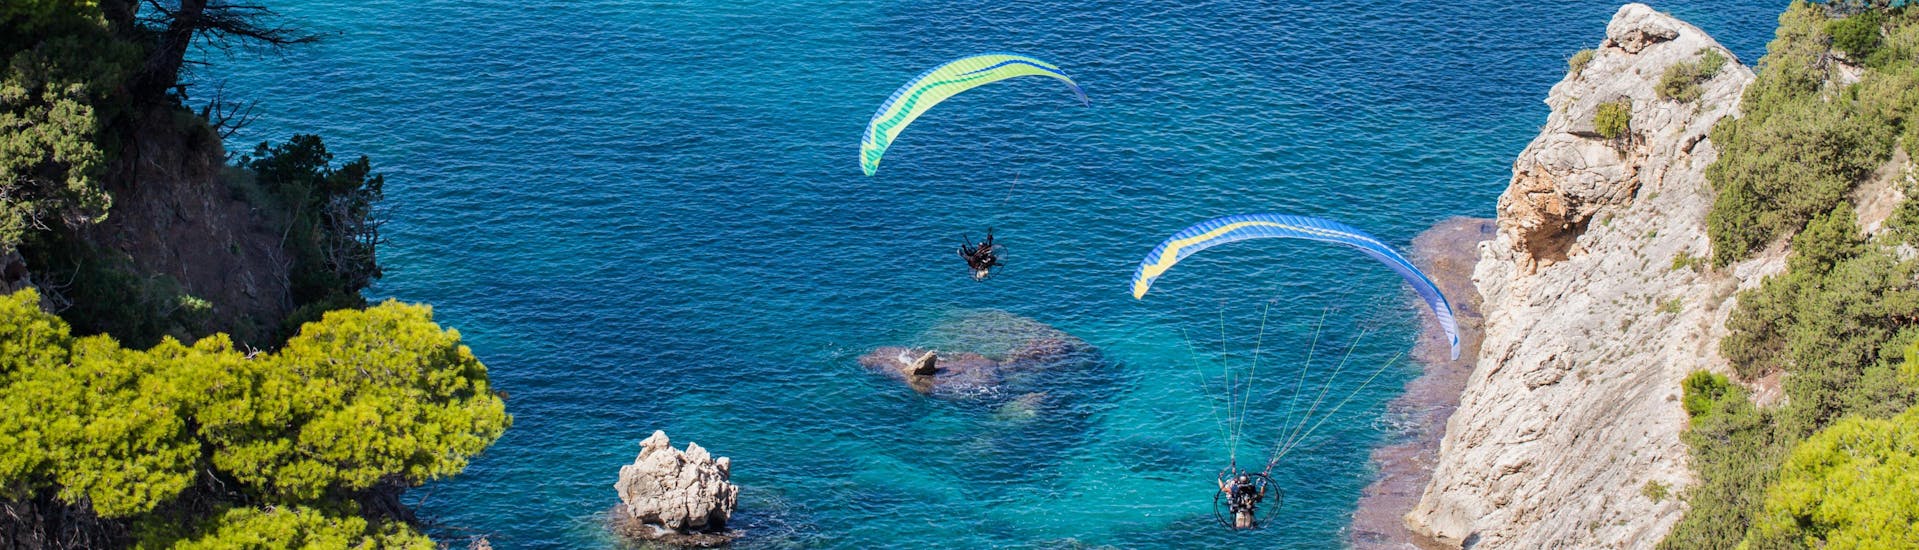 Un entusiasmado participante en un vuelo en parapente biplaza sobrevuela Región de Chania, uno de los sitios más populares para volar en parapente.